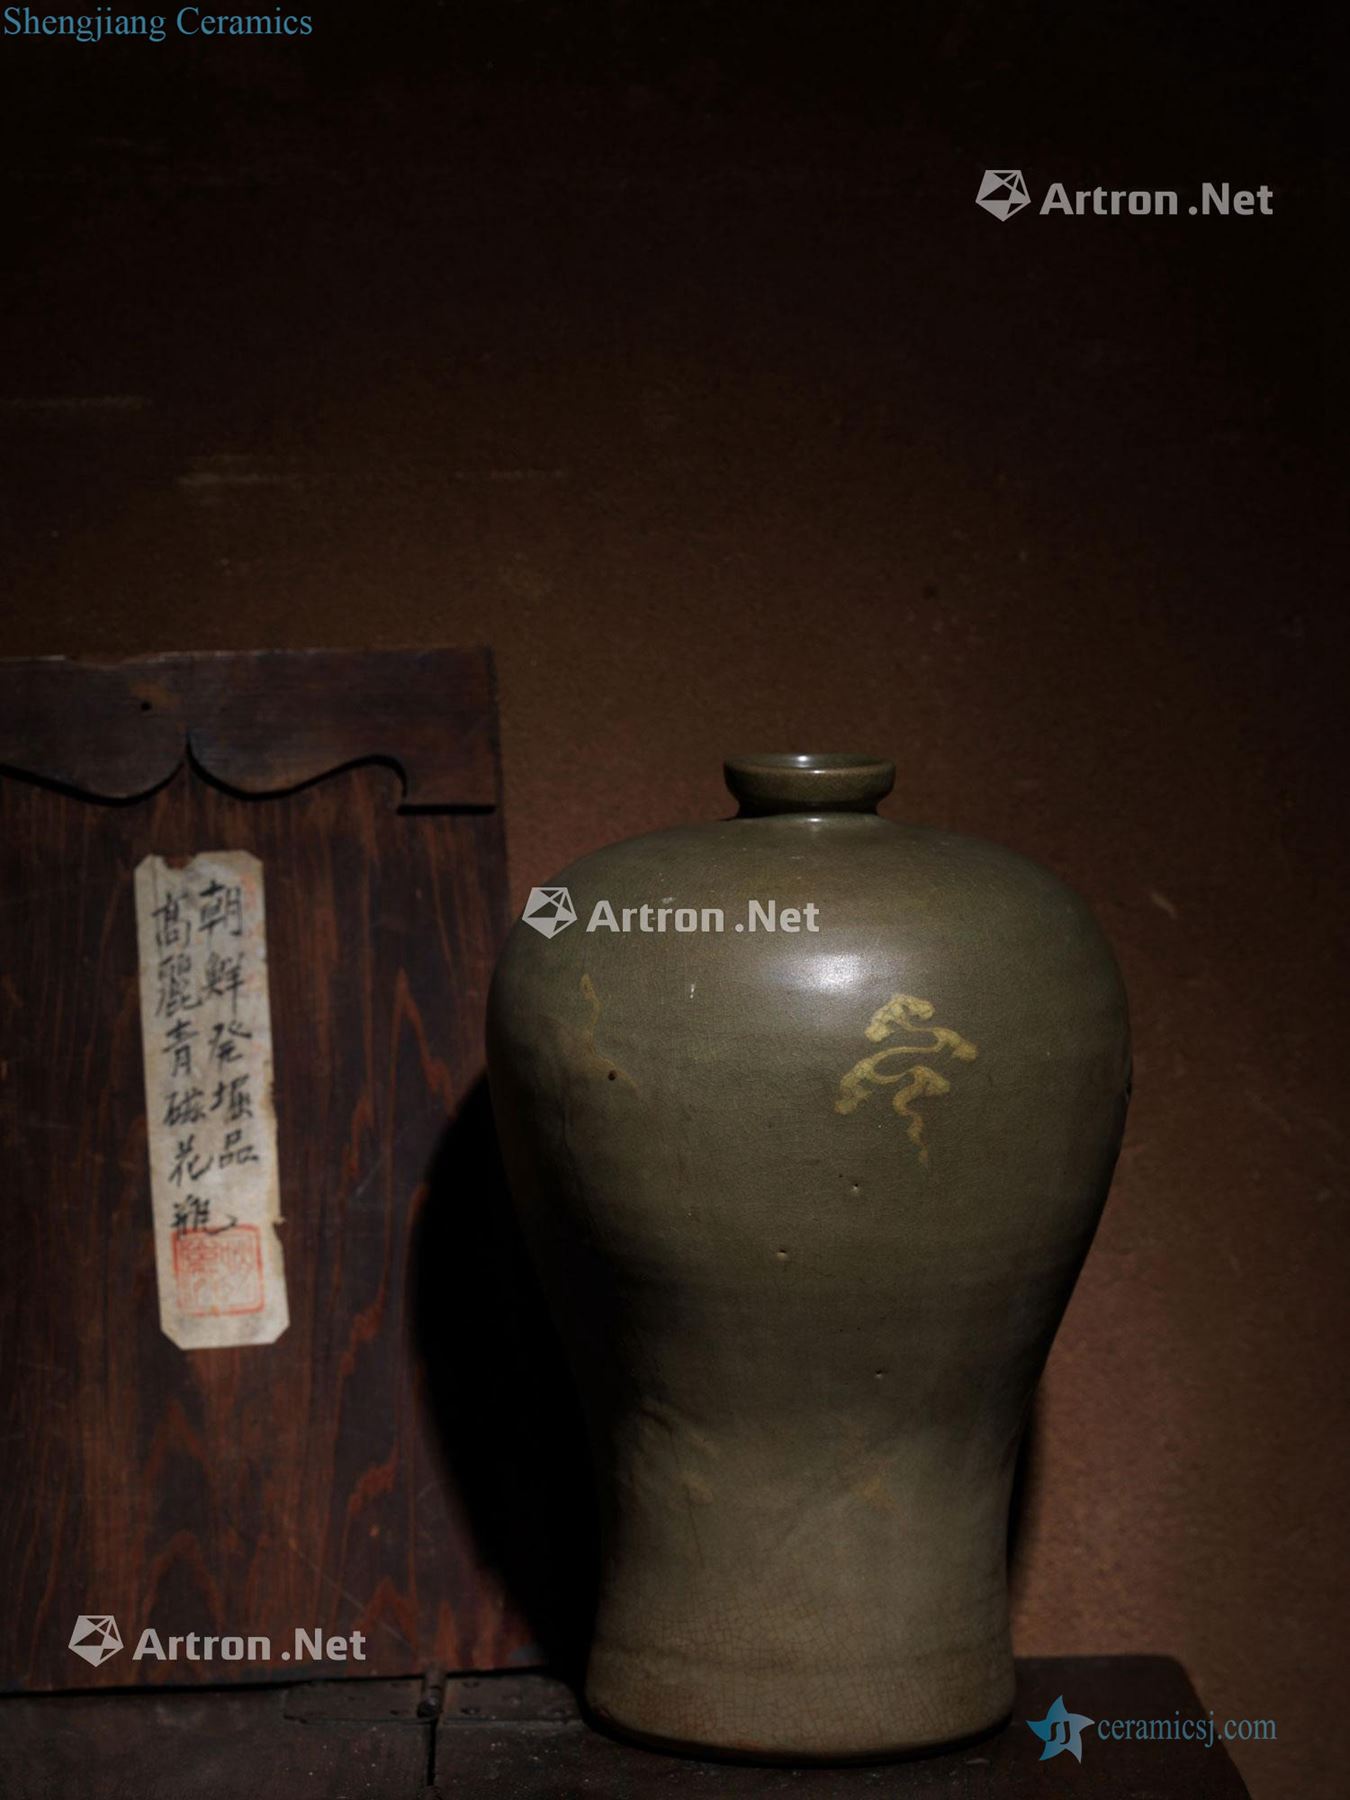 In the 13th century Koryo celadon mei bottles